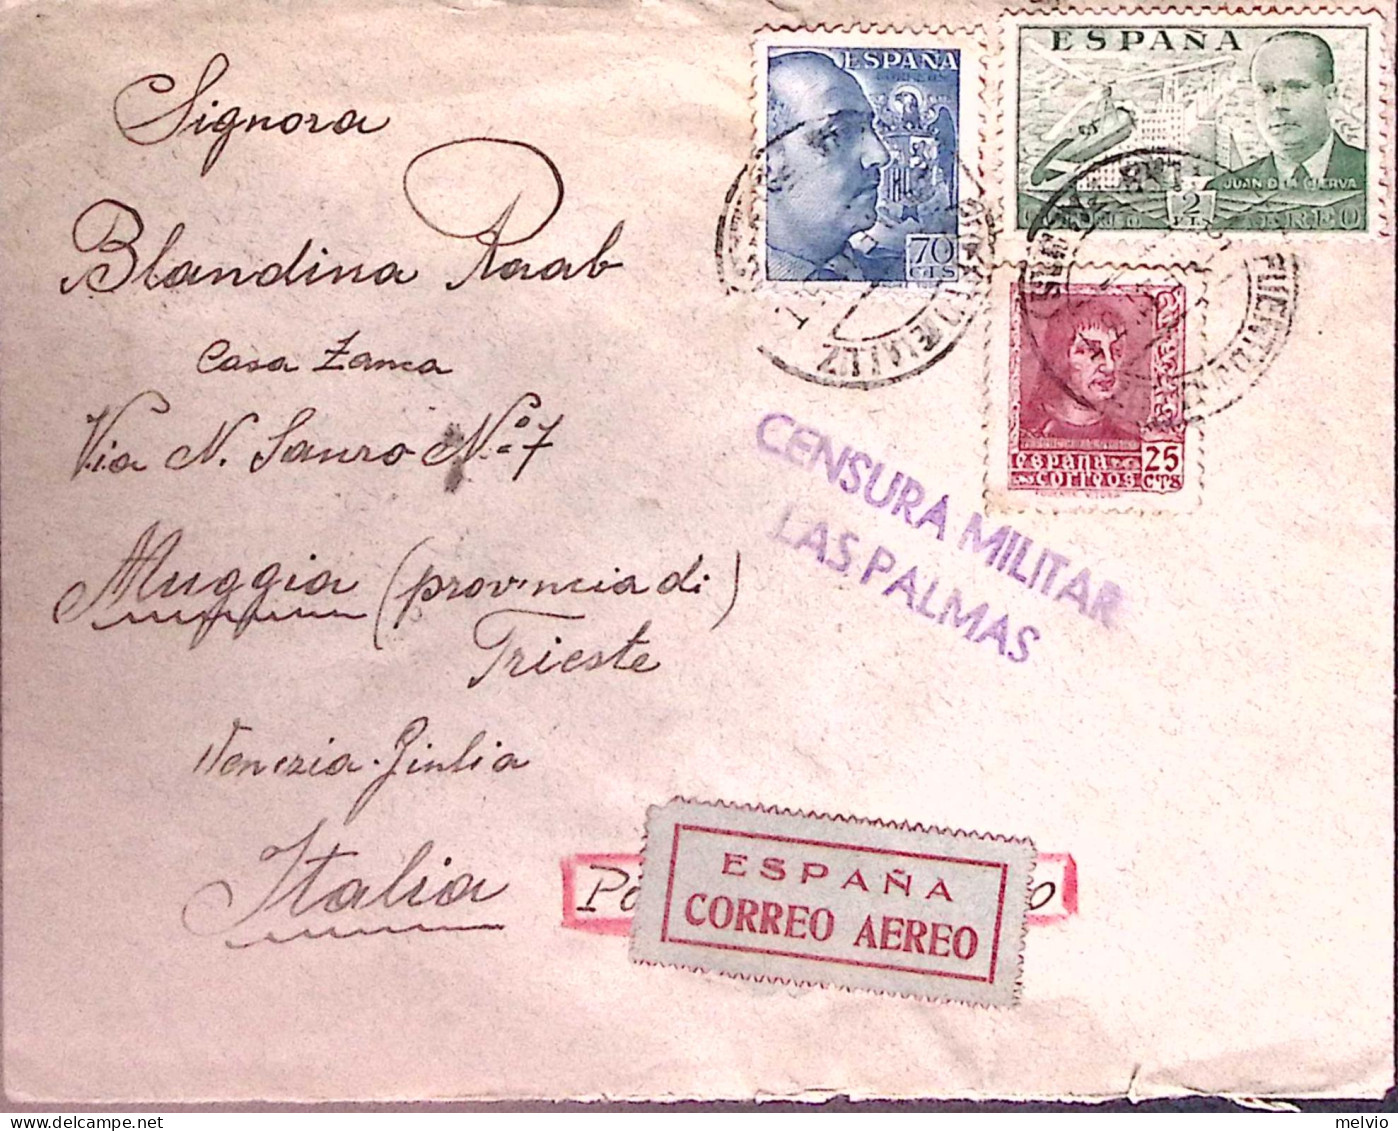 1941-PIROSCAFO IDA Manoscritto Al Verso Di Busta Via Aerea, Affrancata Spagna C. - War 1939-45